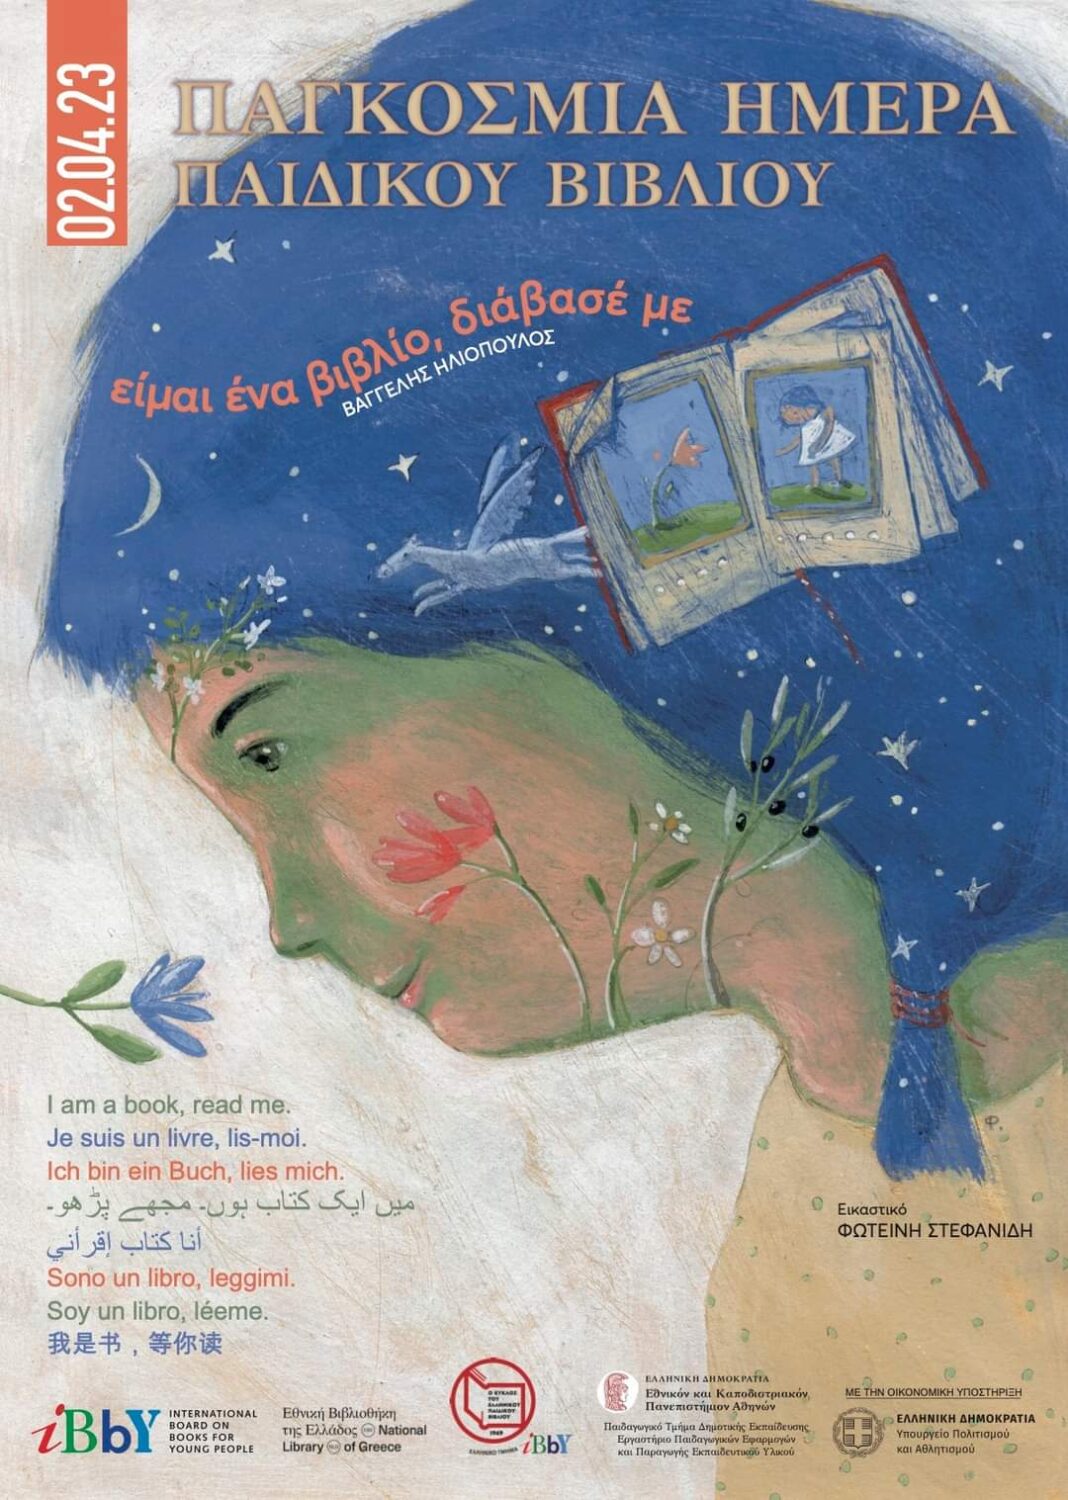 Παγκόσμια Ημέρα Παιδικού Βιβλίου: Οι Βιβλιοθήκες του Δήμου Χανίων γιορτάζουν